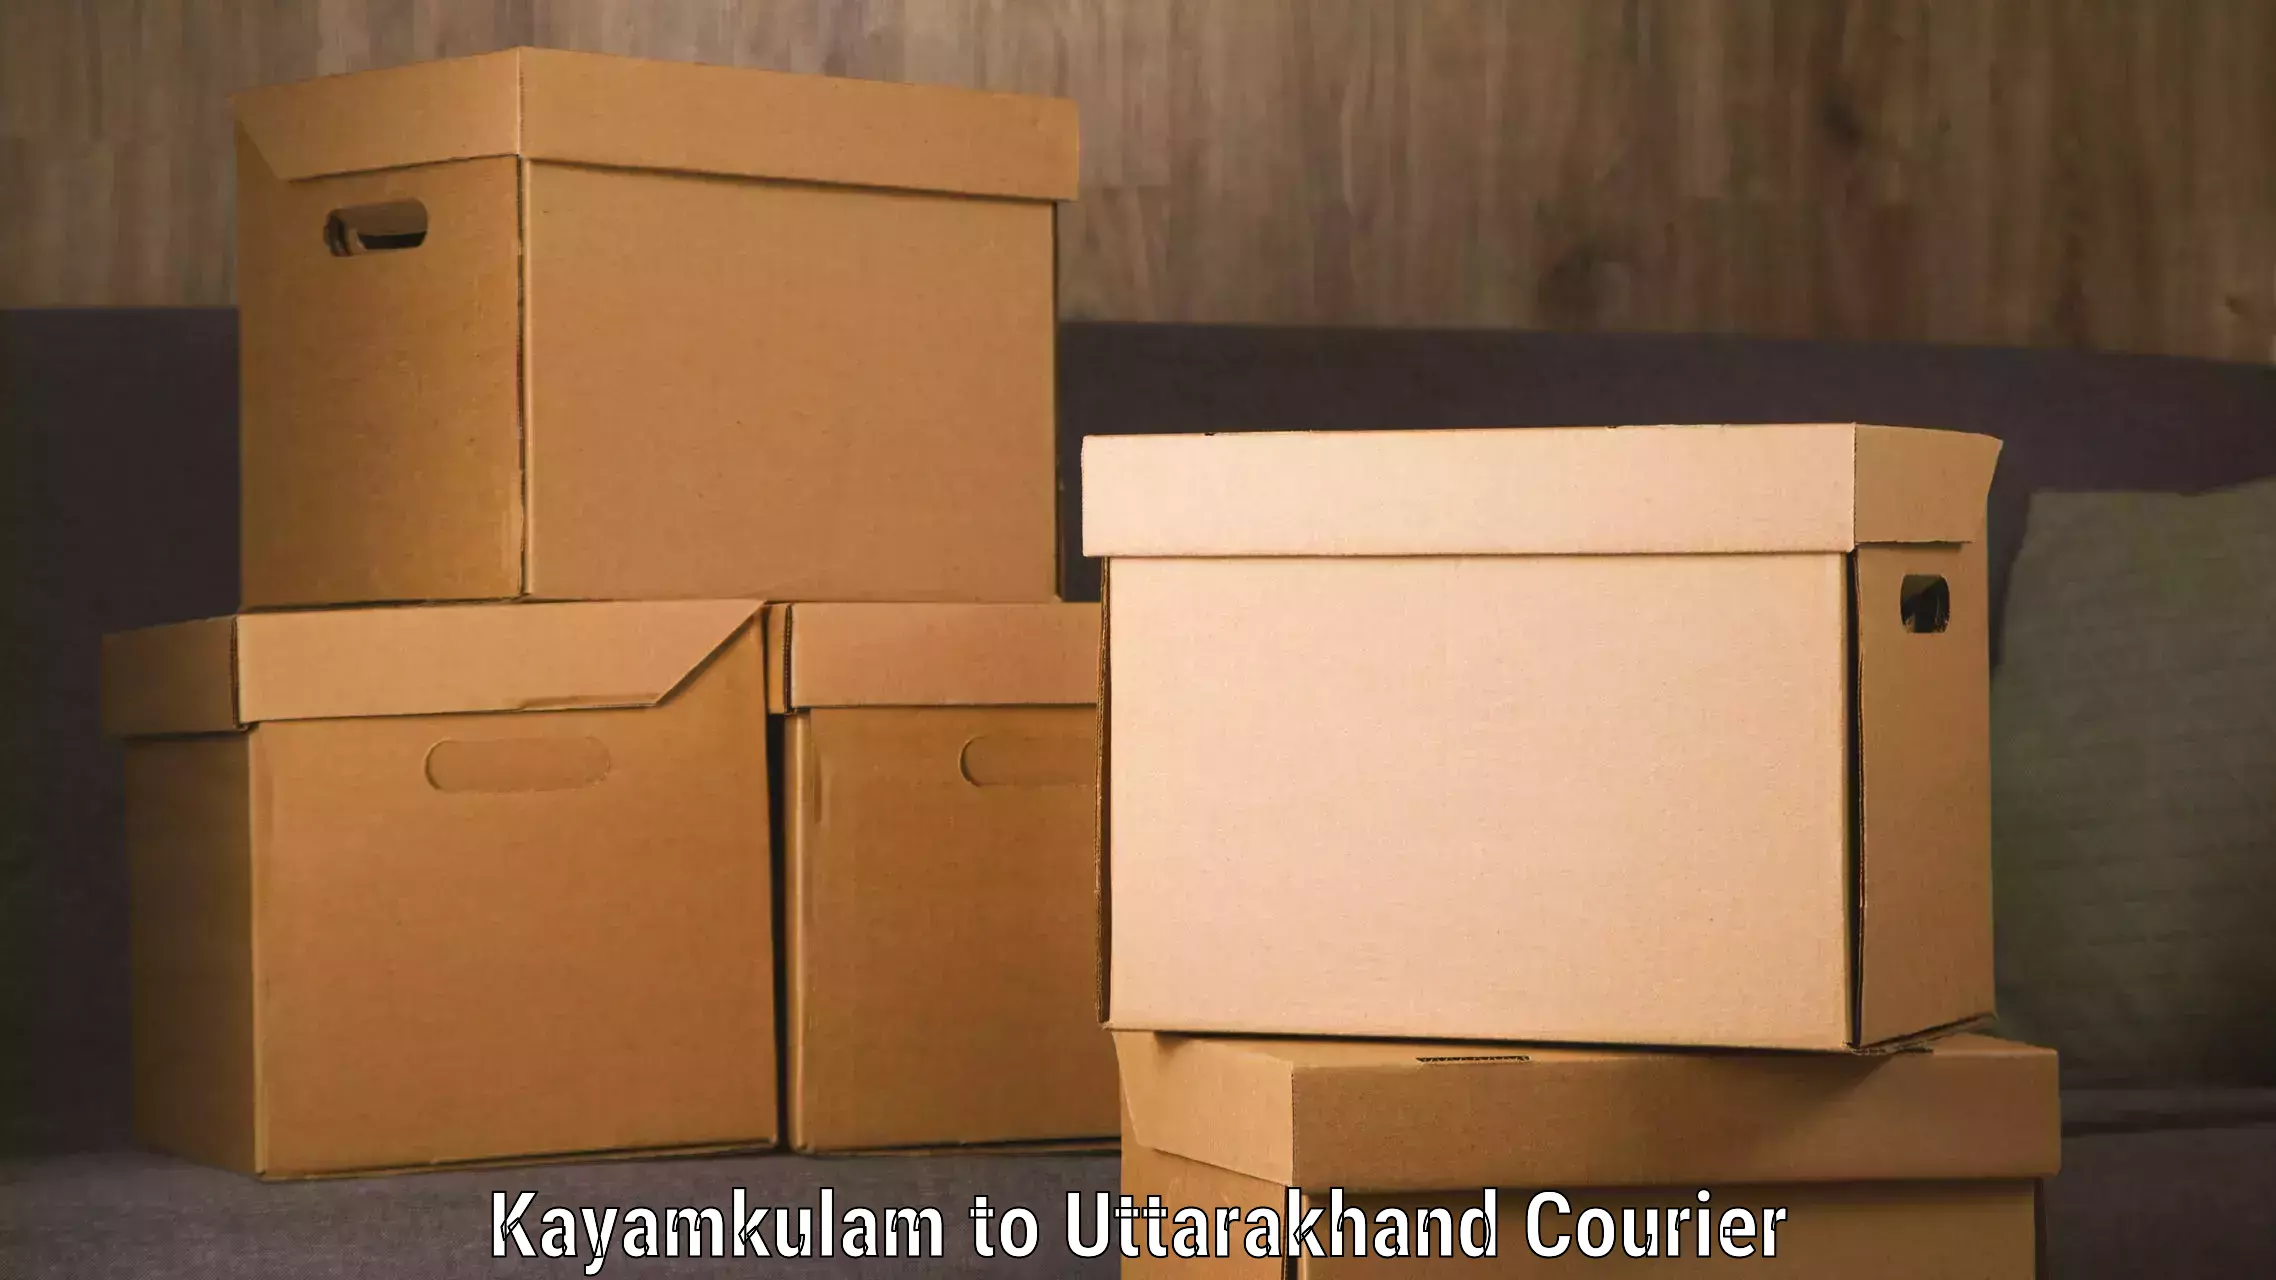 Efficient courier operations Kayamkulam to Uttarakhand